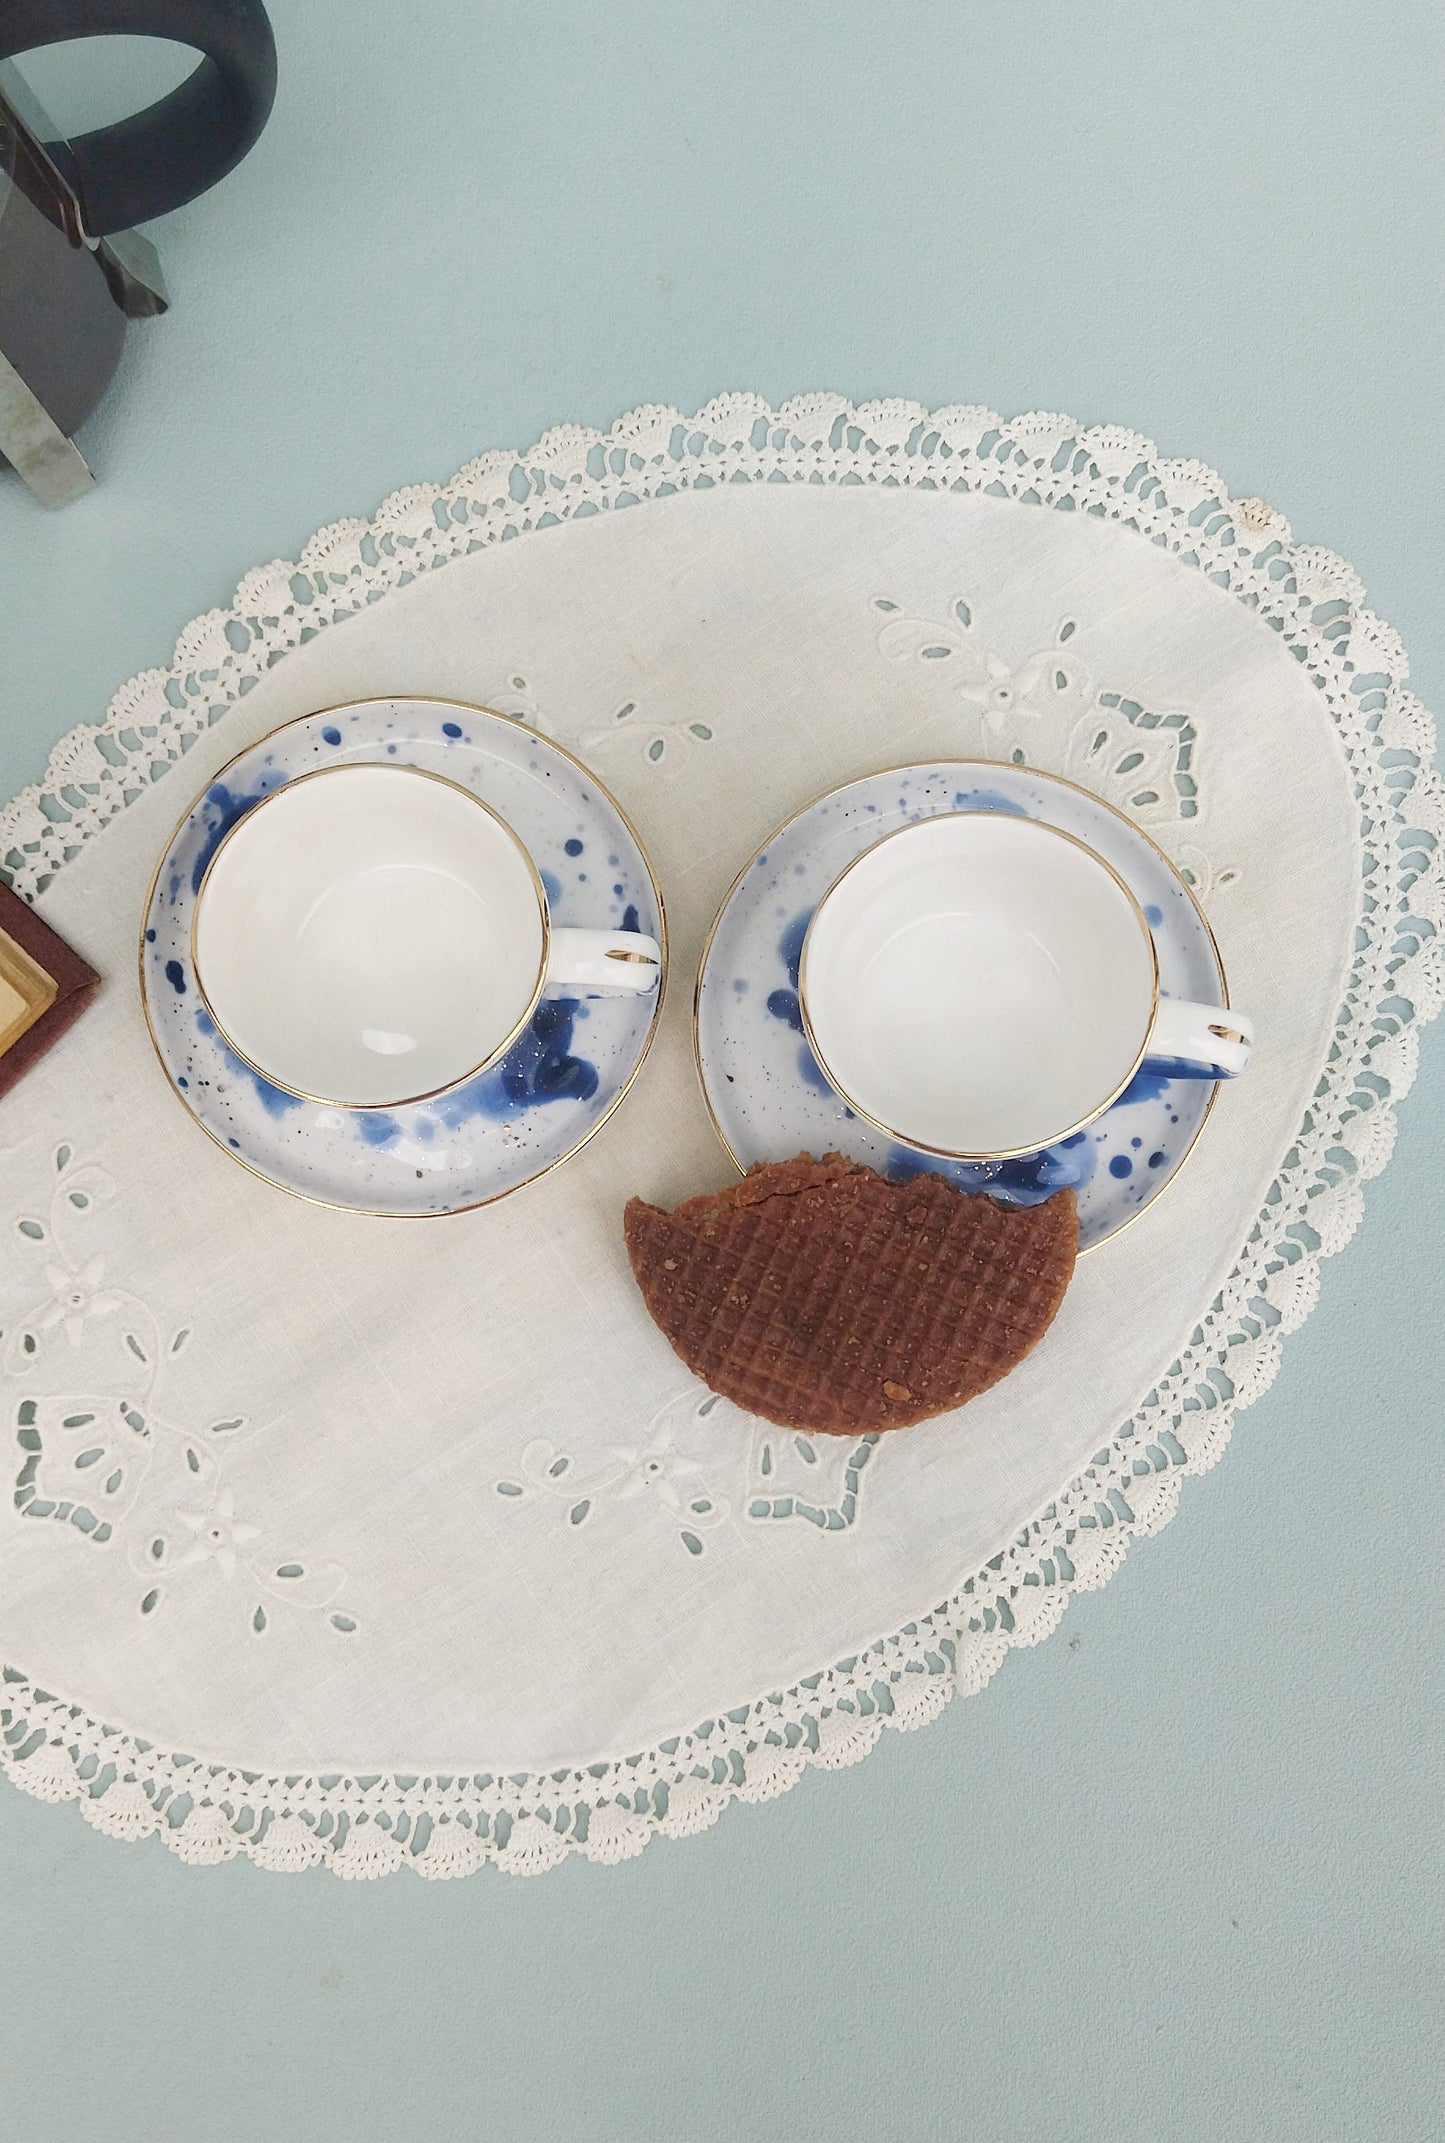 Gold Ceramic Espresso Cups, White Porcelain Mug With Saucer, Set Of 6